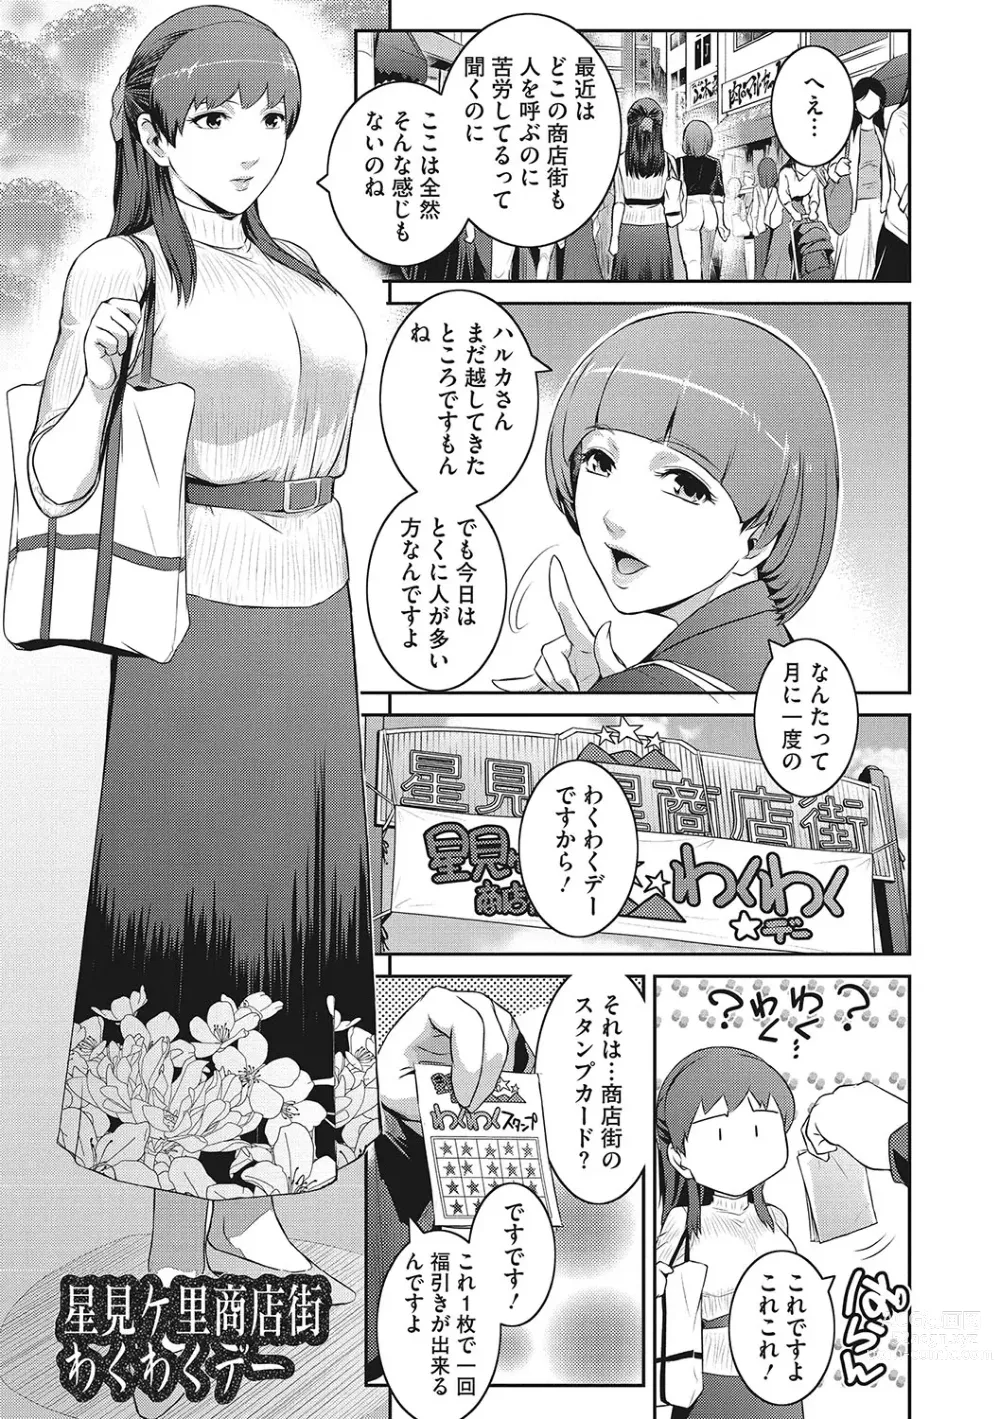 Page 176 of manga Genwaku